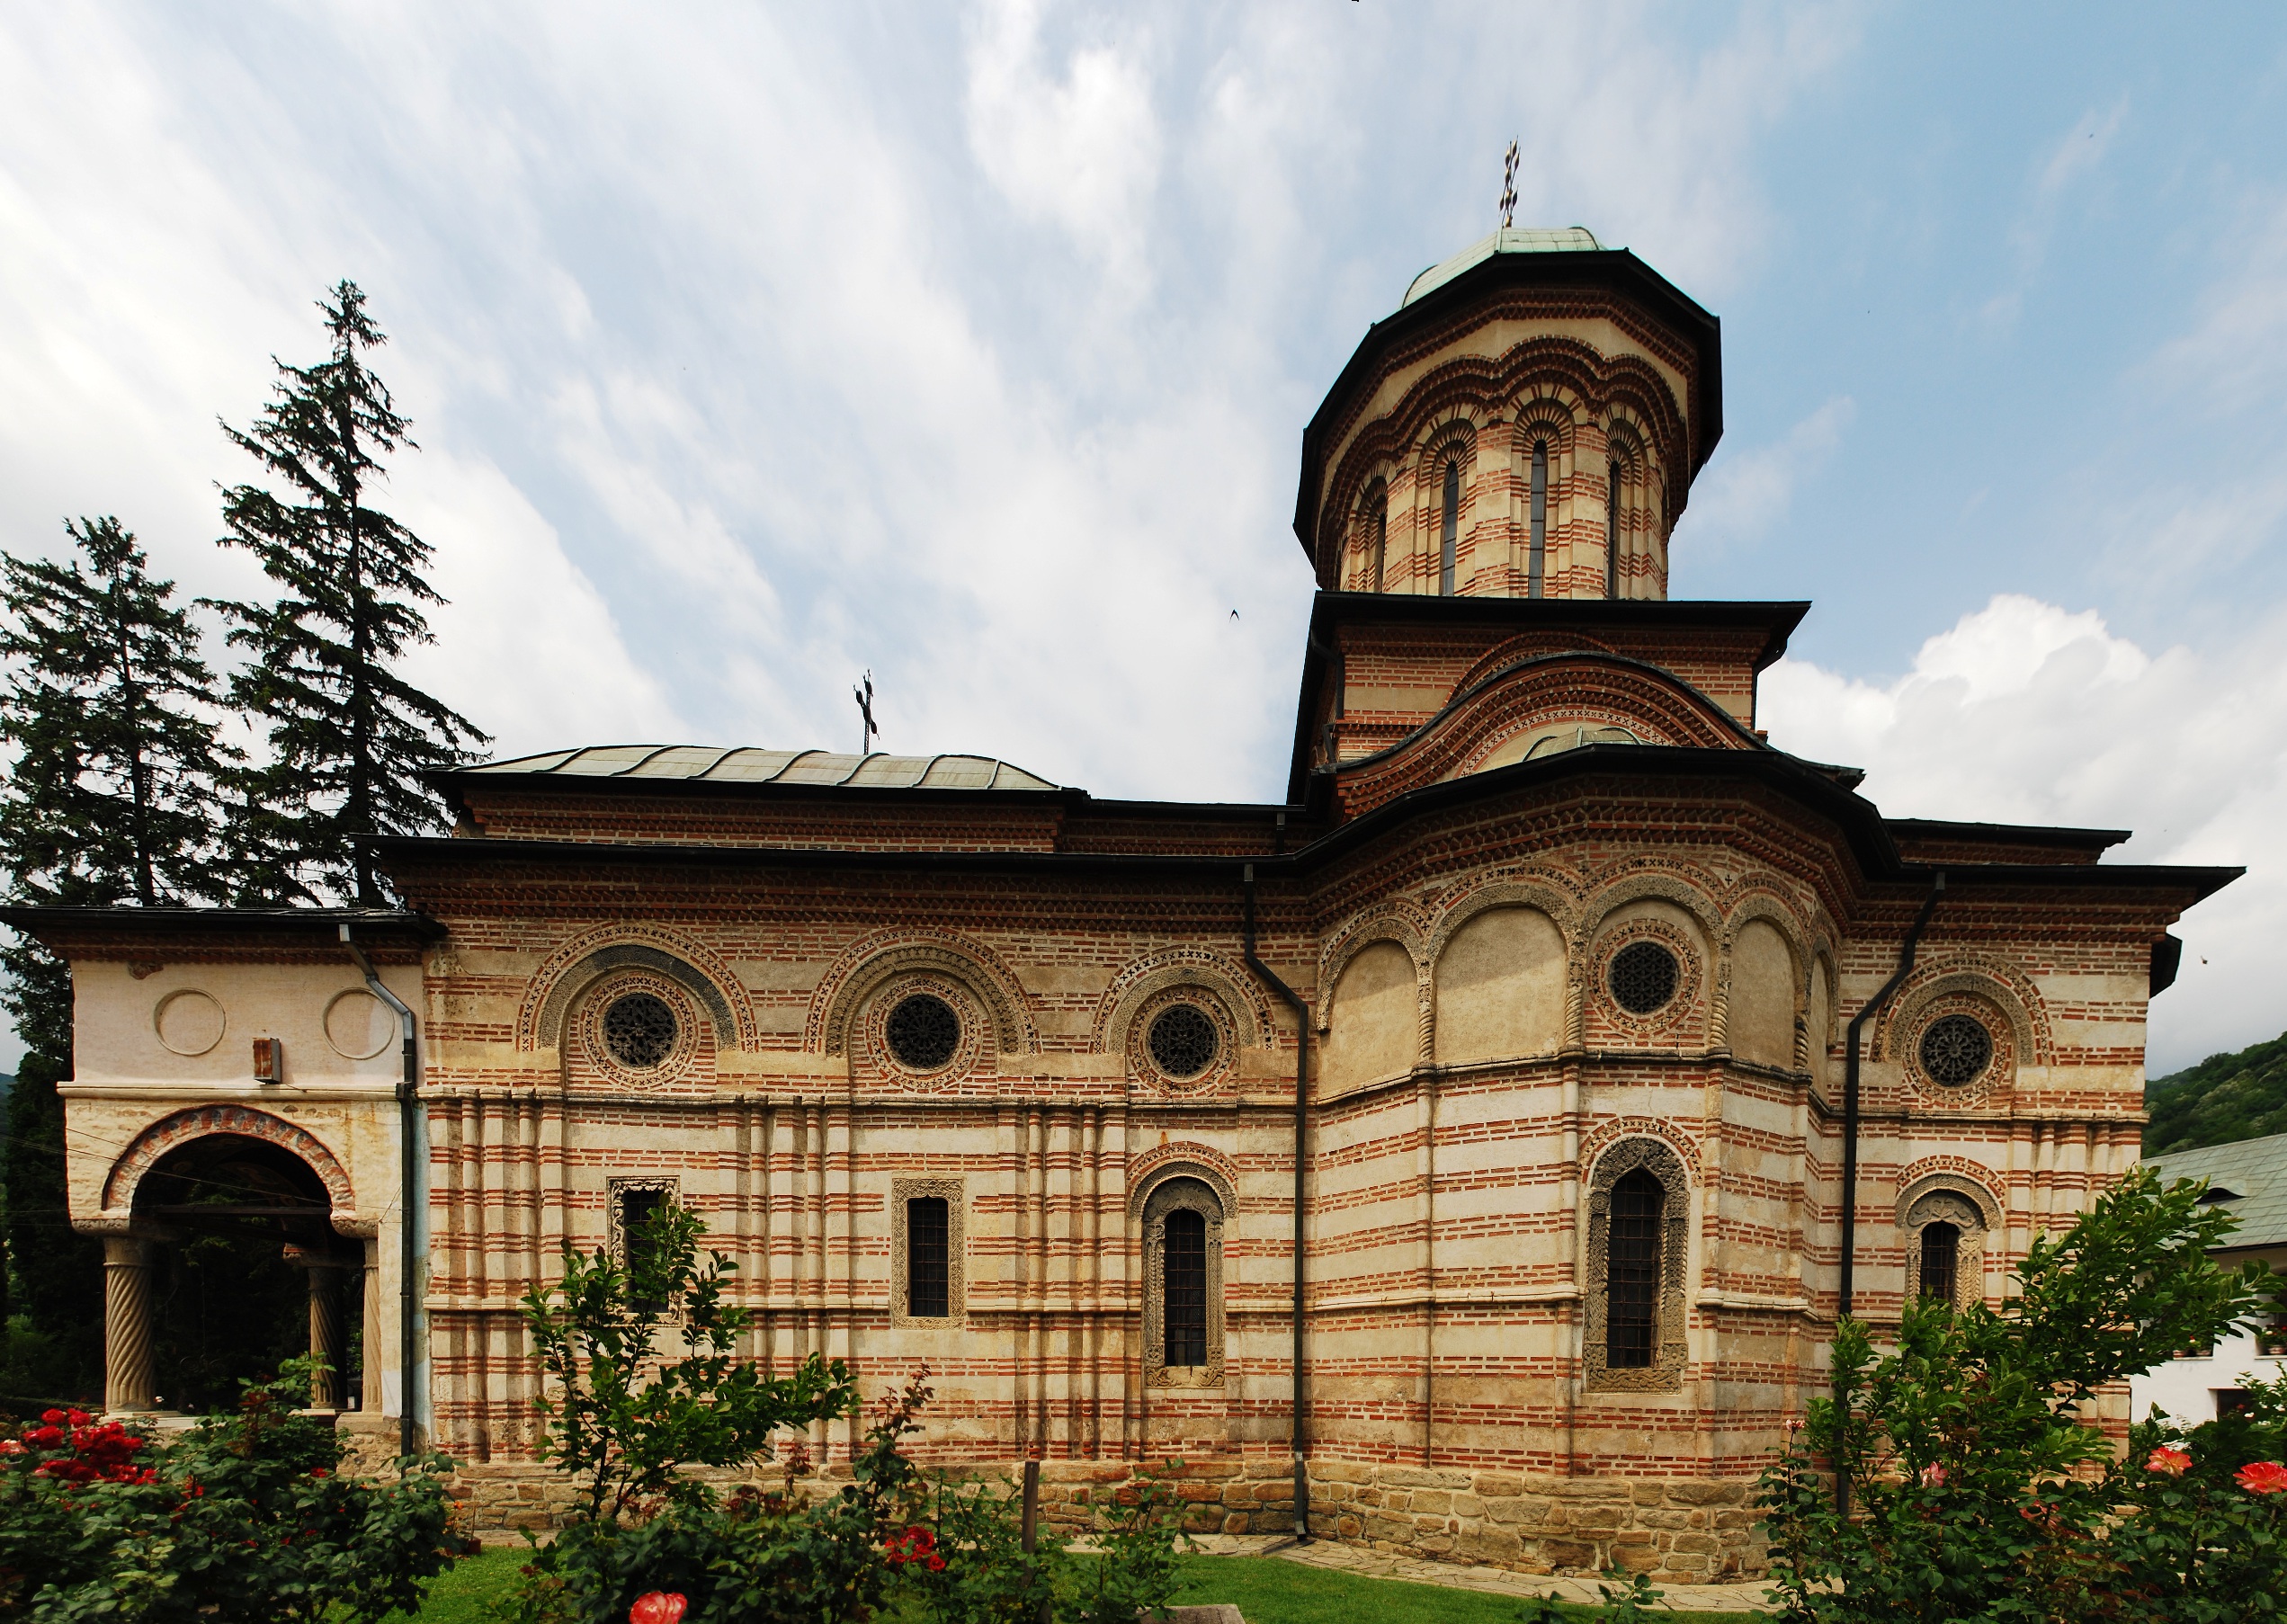 The Holy Trinity Church at Cozia Monastery, exterior, Wallachia, ca. 1387–91 (source: Wikimedia)